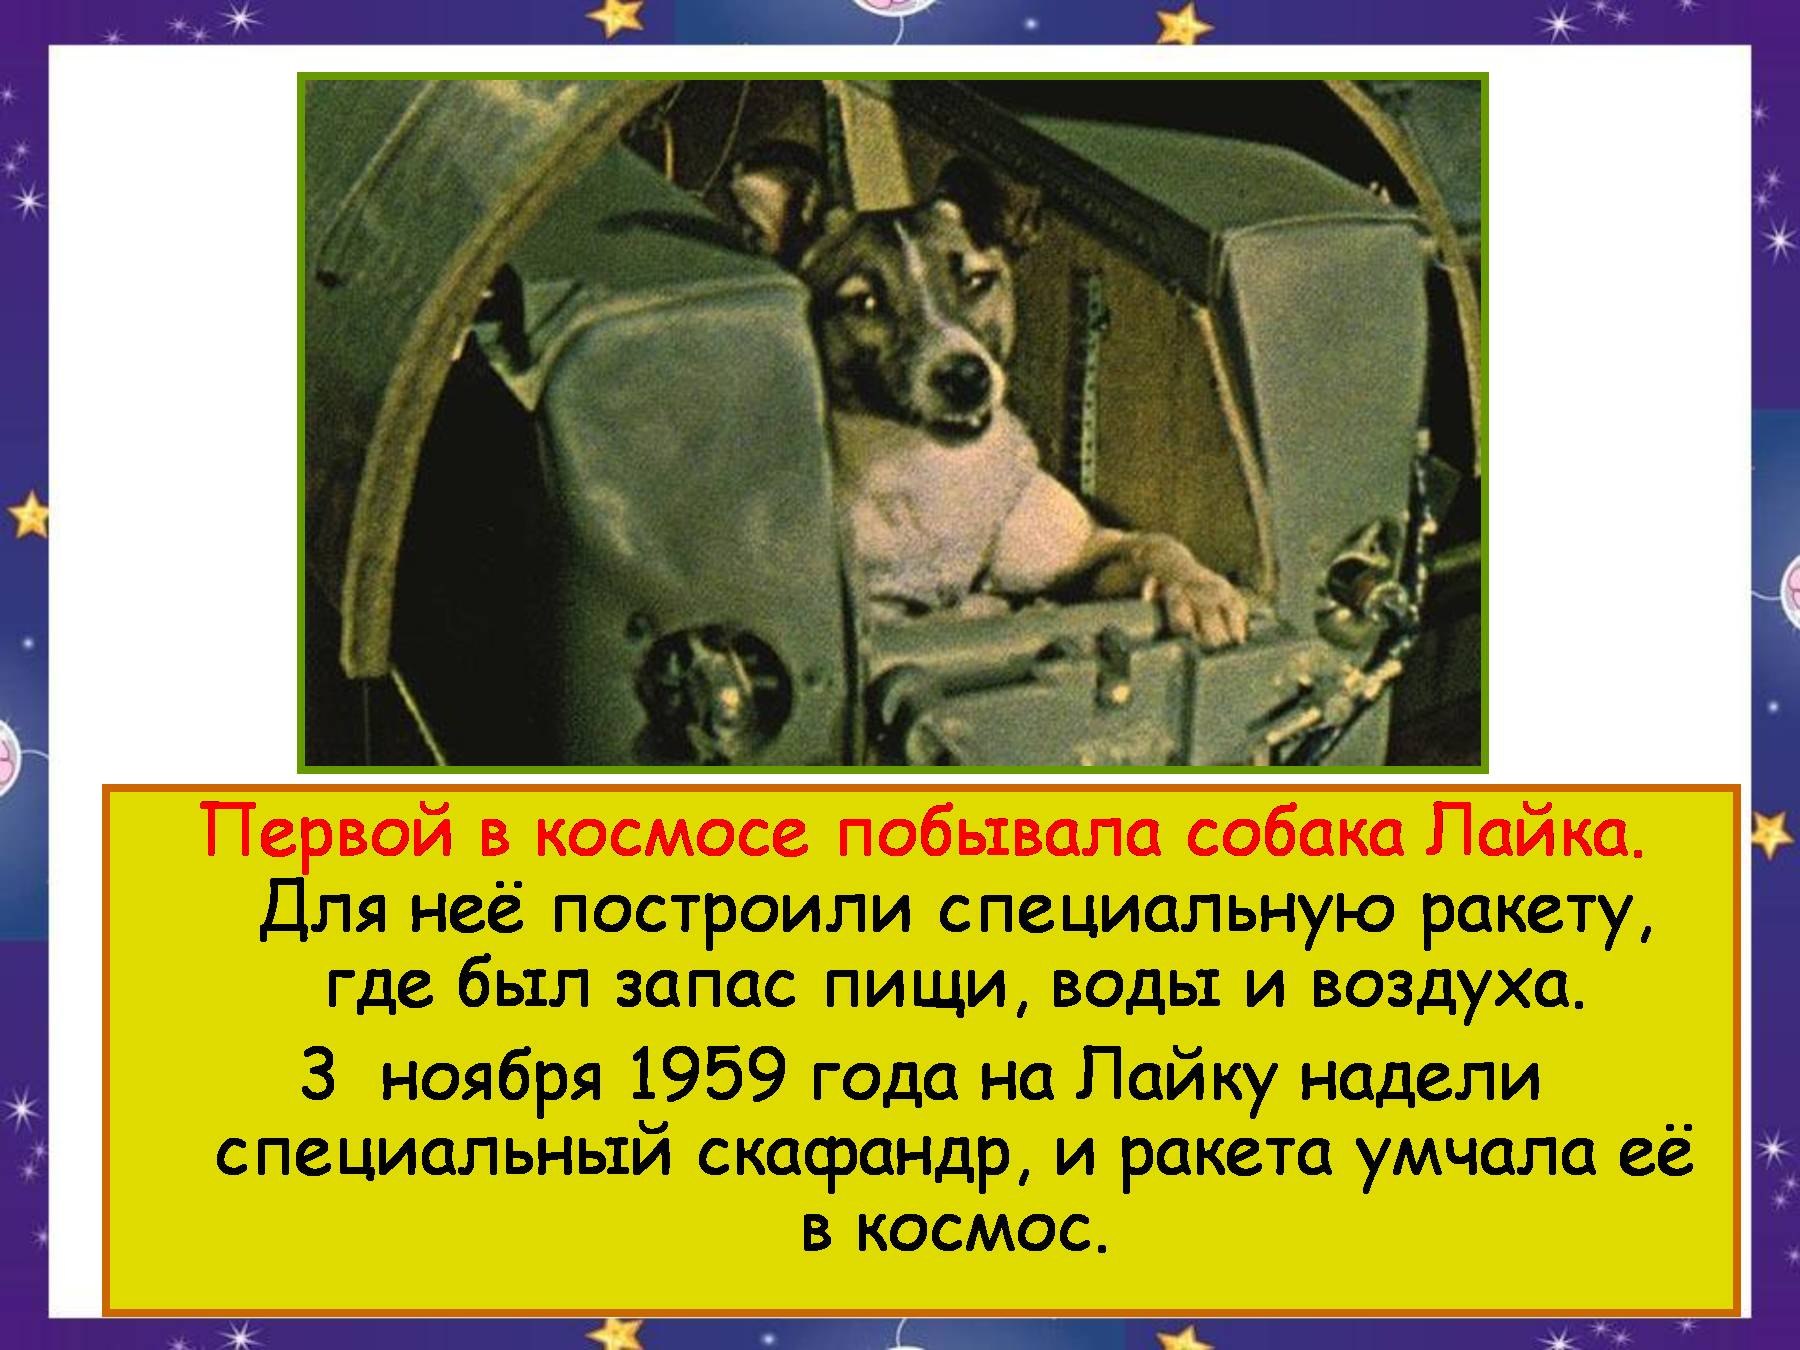 Первой собакой в космосе была. Лайка первая собака которая полетела в космос. Собаки в космосе презентация. Собака лайка побывавшая в космосе. Лайка в космосе презентация.